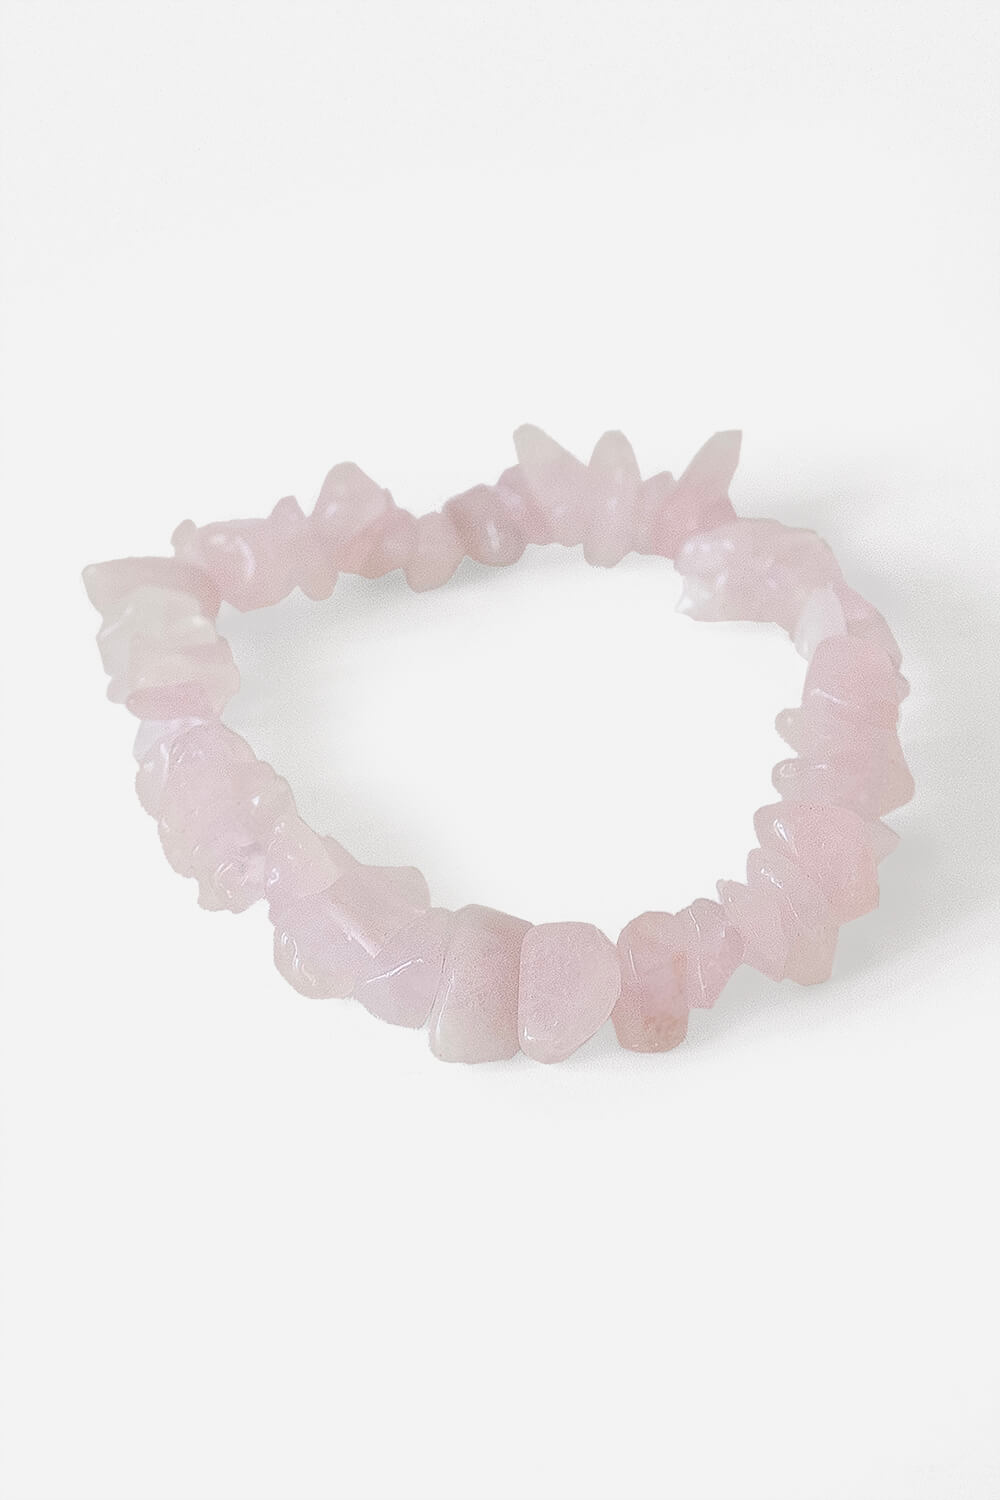 Rose quartz beaded bracelet, 'Soft Hearts' | Rose quartz bracelet beads,  Beaded jewelry bracelets, Bracelets handmade beaded